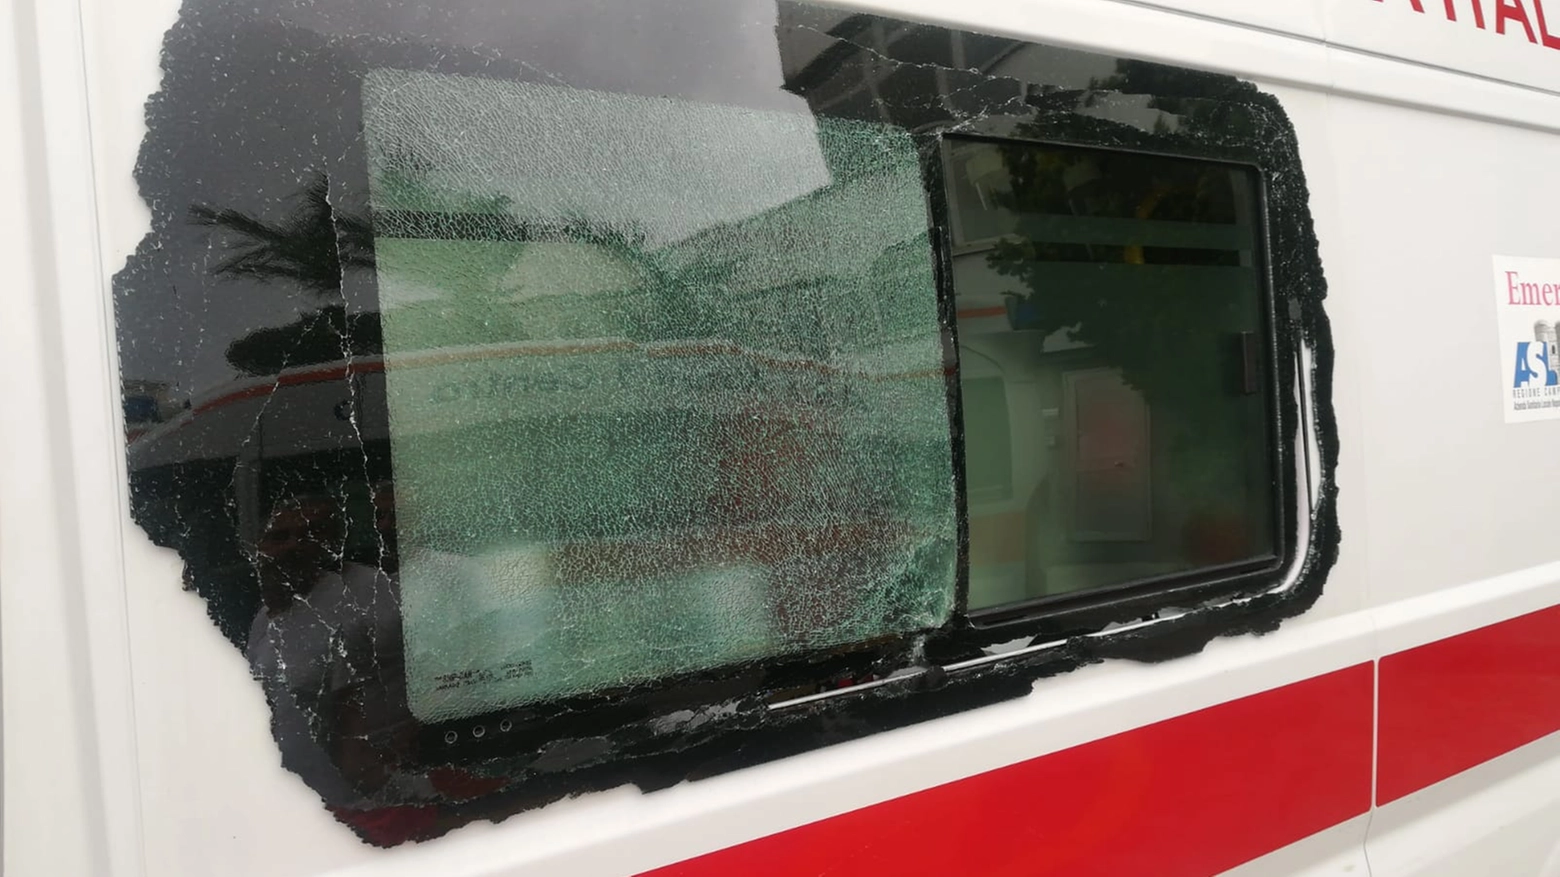 Il vetro dell'ambulanza colpito stamane nel quartiere Vomero di Napoli